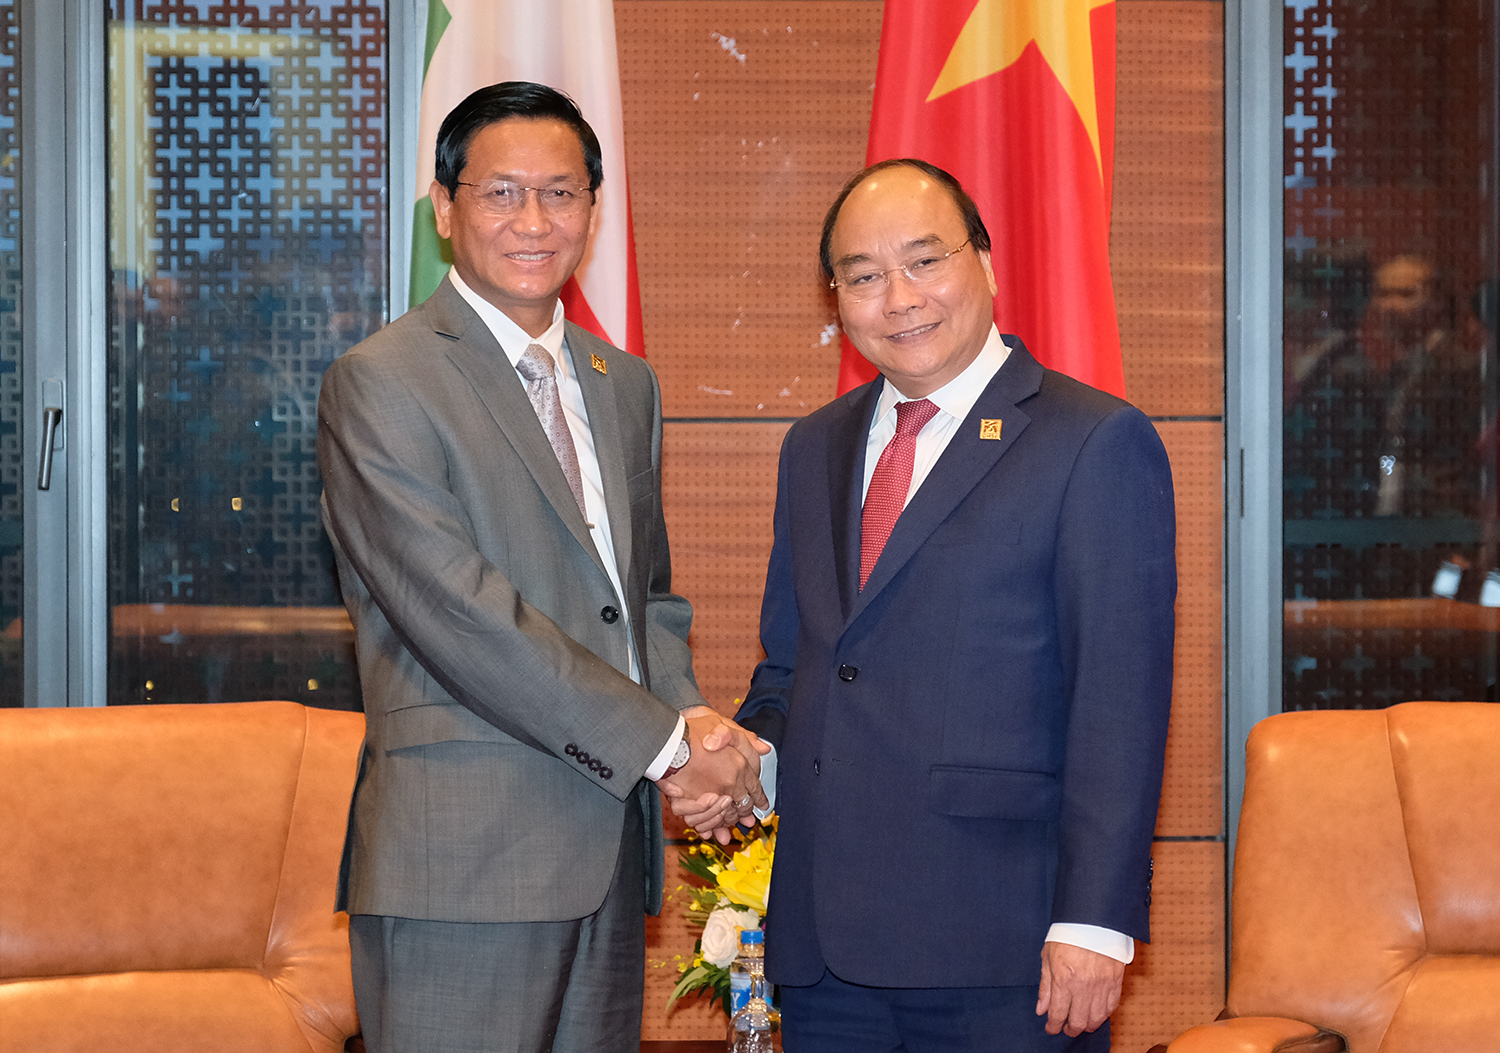 Đối tác Myanmar: Việt Nam và Myanmar có quan hệ cộng đồng tốt đẹp và phát triển rất nhanh chóng. Với tình hữu nghị giữa hai quốc gia, chúng tôi đánh giá cao tầm quan trọng của việc phát triển các mối quan hệ đối tác. Chúng tôi luôn tìm kiếm các đối tác tại Myanmar để xây dựng các dự án chung và phát triển bền vững trong tương lai.